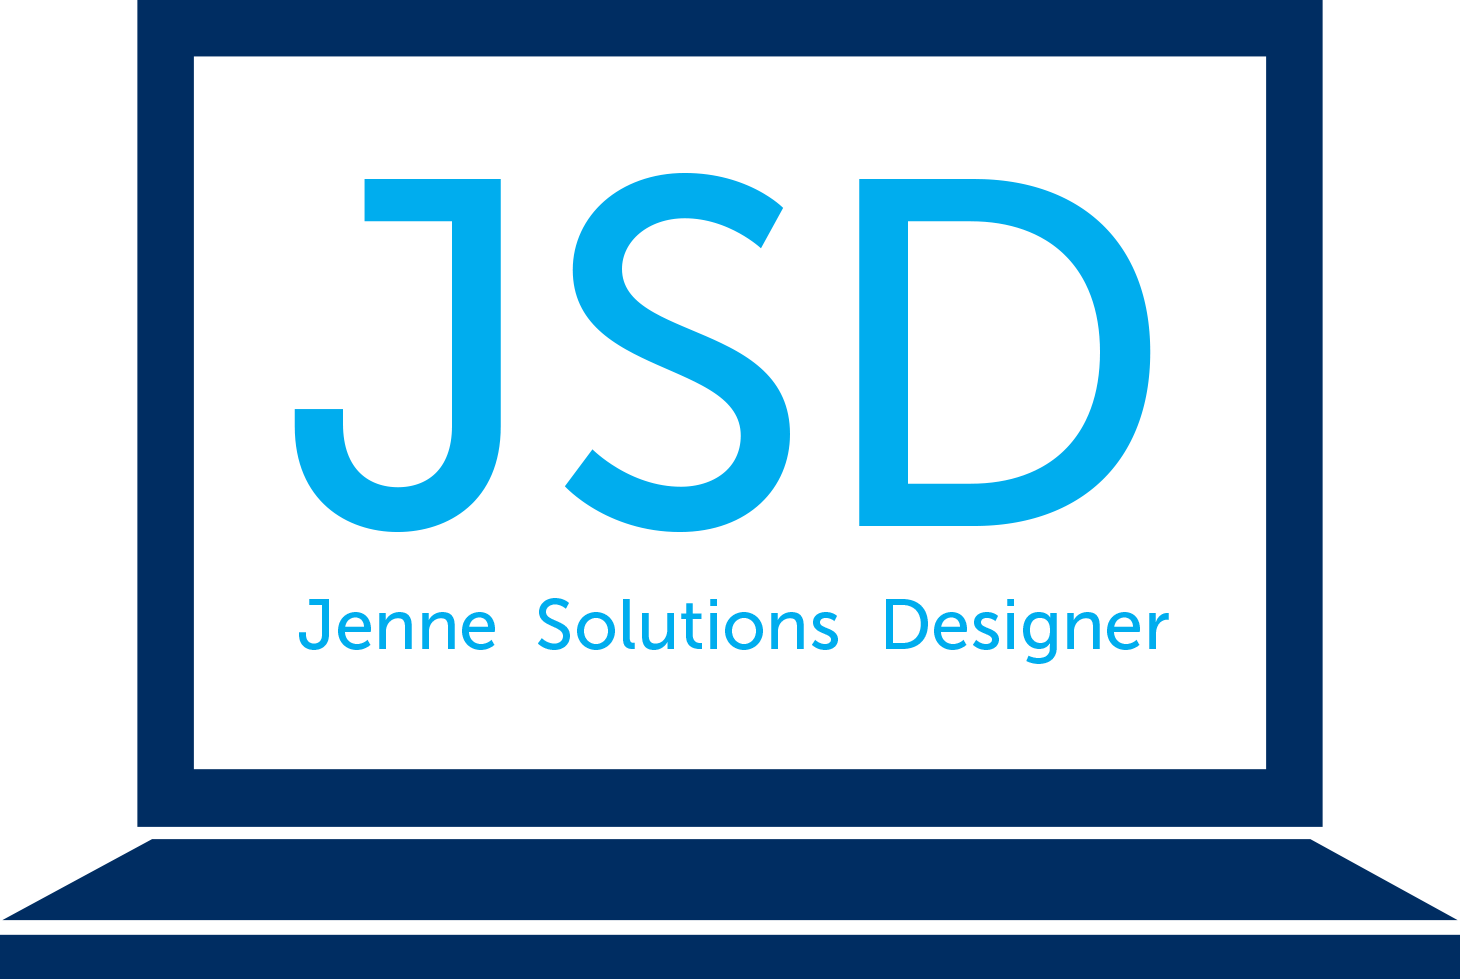 Jenne Solutions Designer